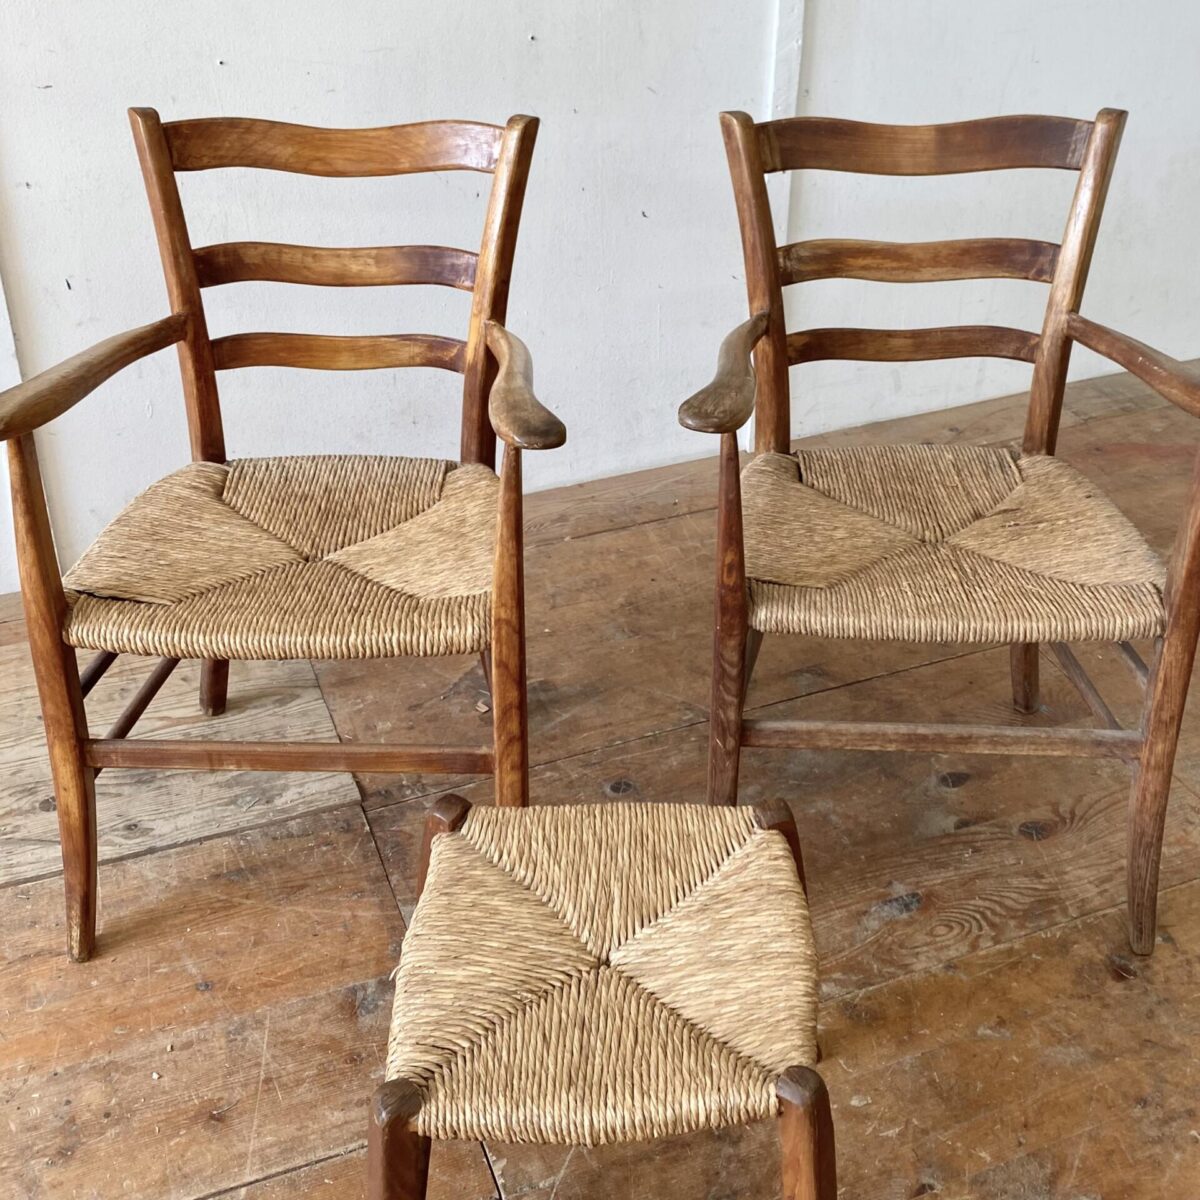 Deuxieme.shop Holz Sessel. Tessiner Armlehnstühle mit Ottoman. Sitzhöhe 44cm der kleine Hocker ist etwas tiefer. Eine der beiden Sitzflächen ist bisschen ausgefranst gemäss Bild 4. Ansonsten in stabilem Zustand. 